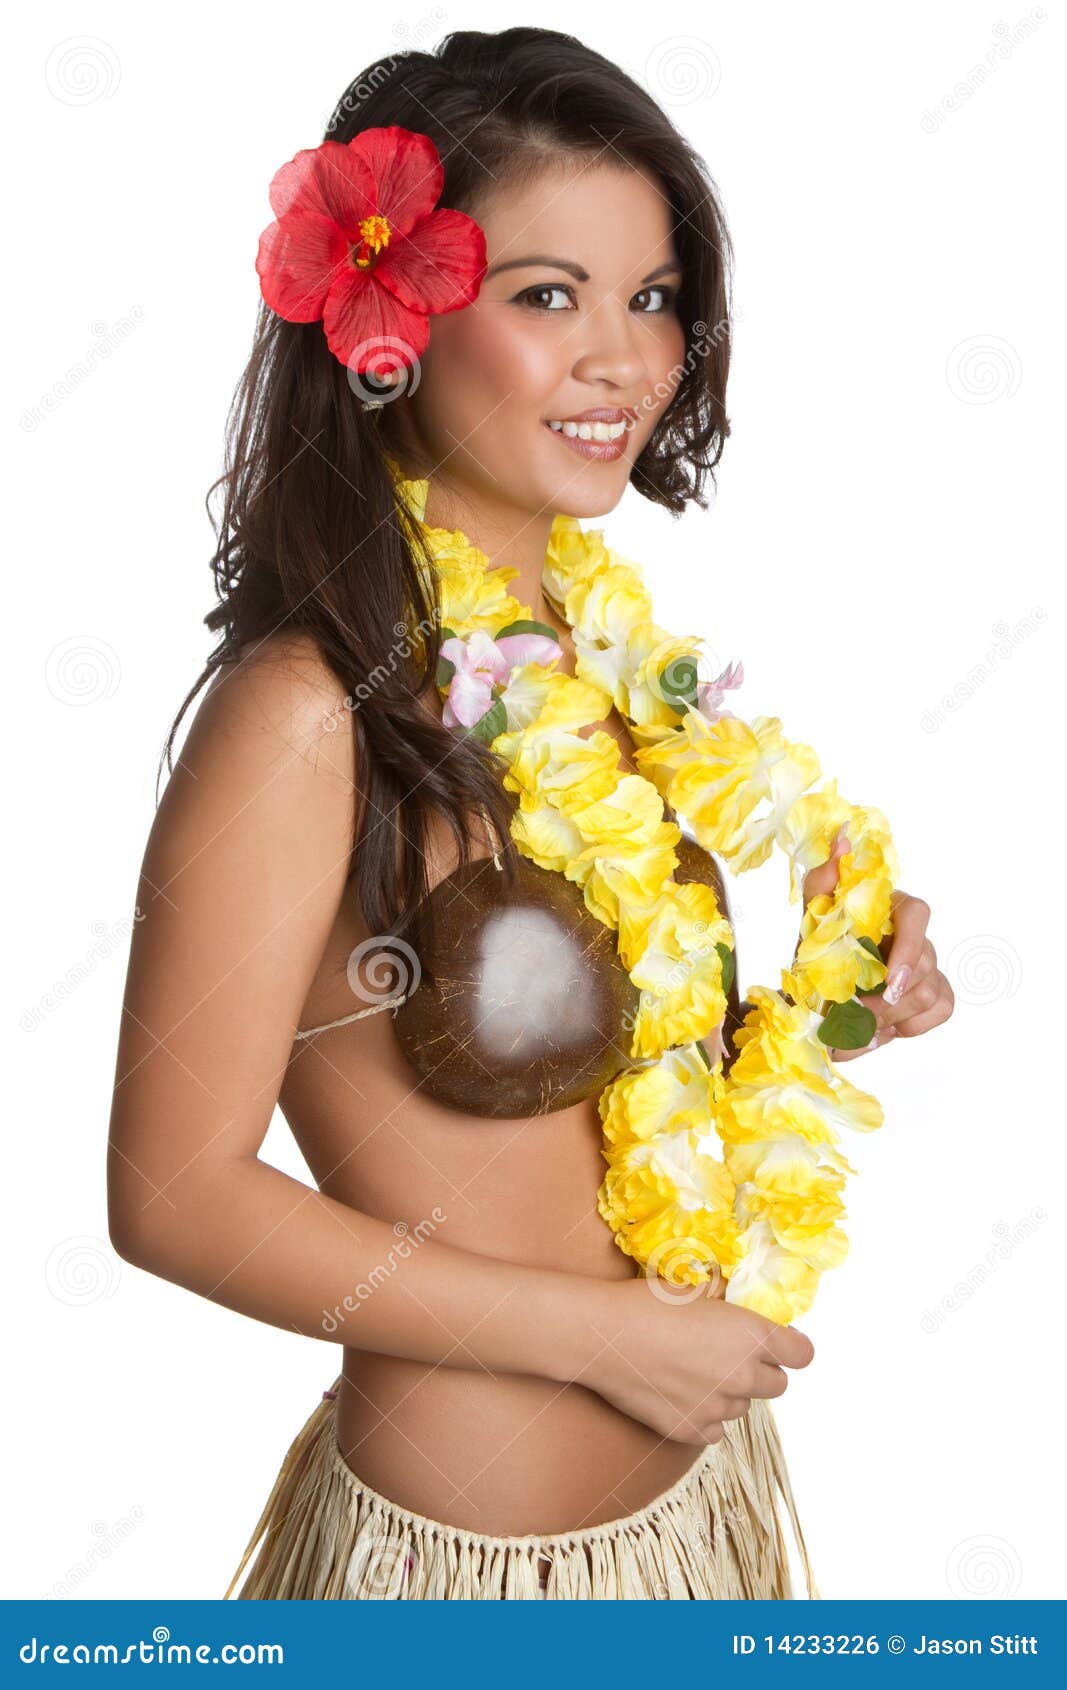 hawaiian-girl-14233226.jpg